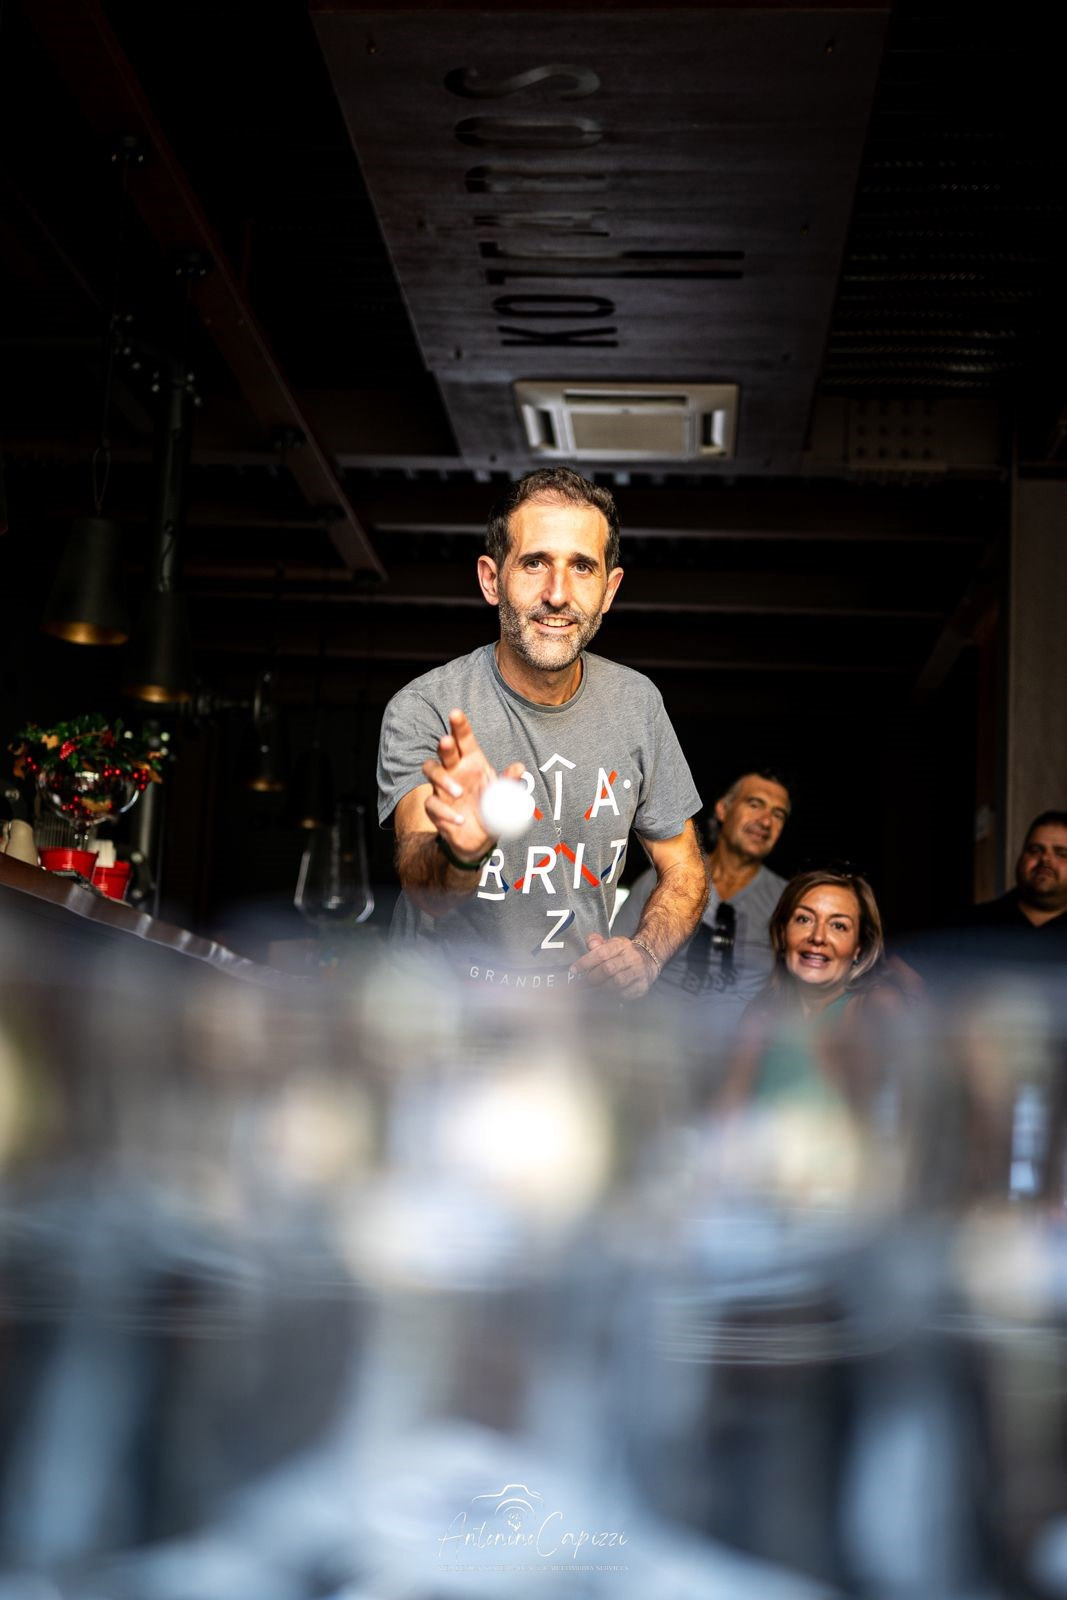 Nuestro amigo fotógrafo Antonino Capizzi ha captado un momento precioso con el beer pong